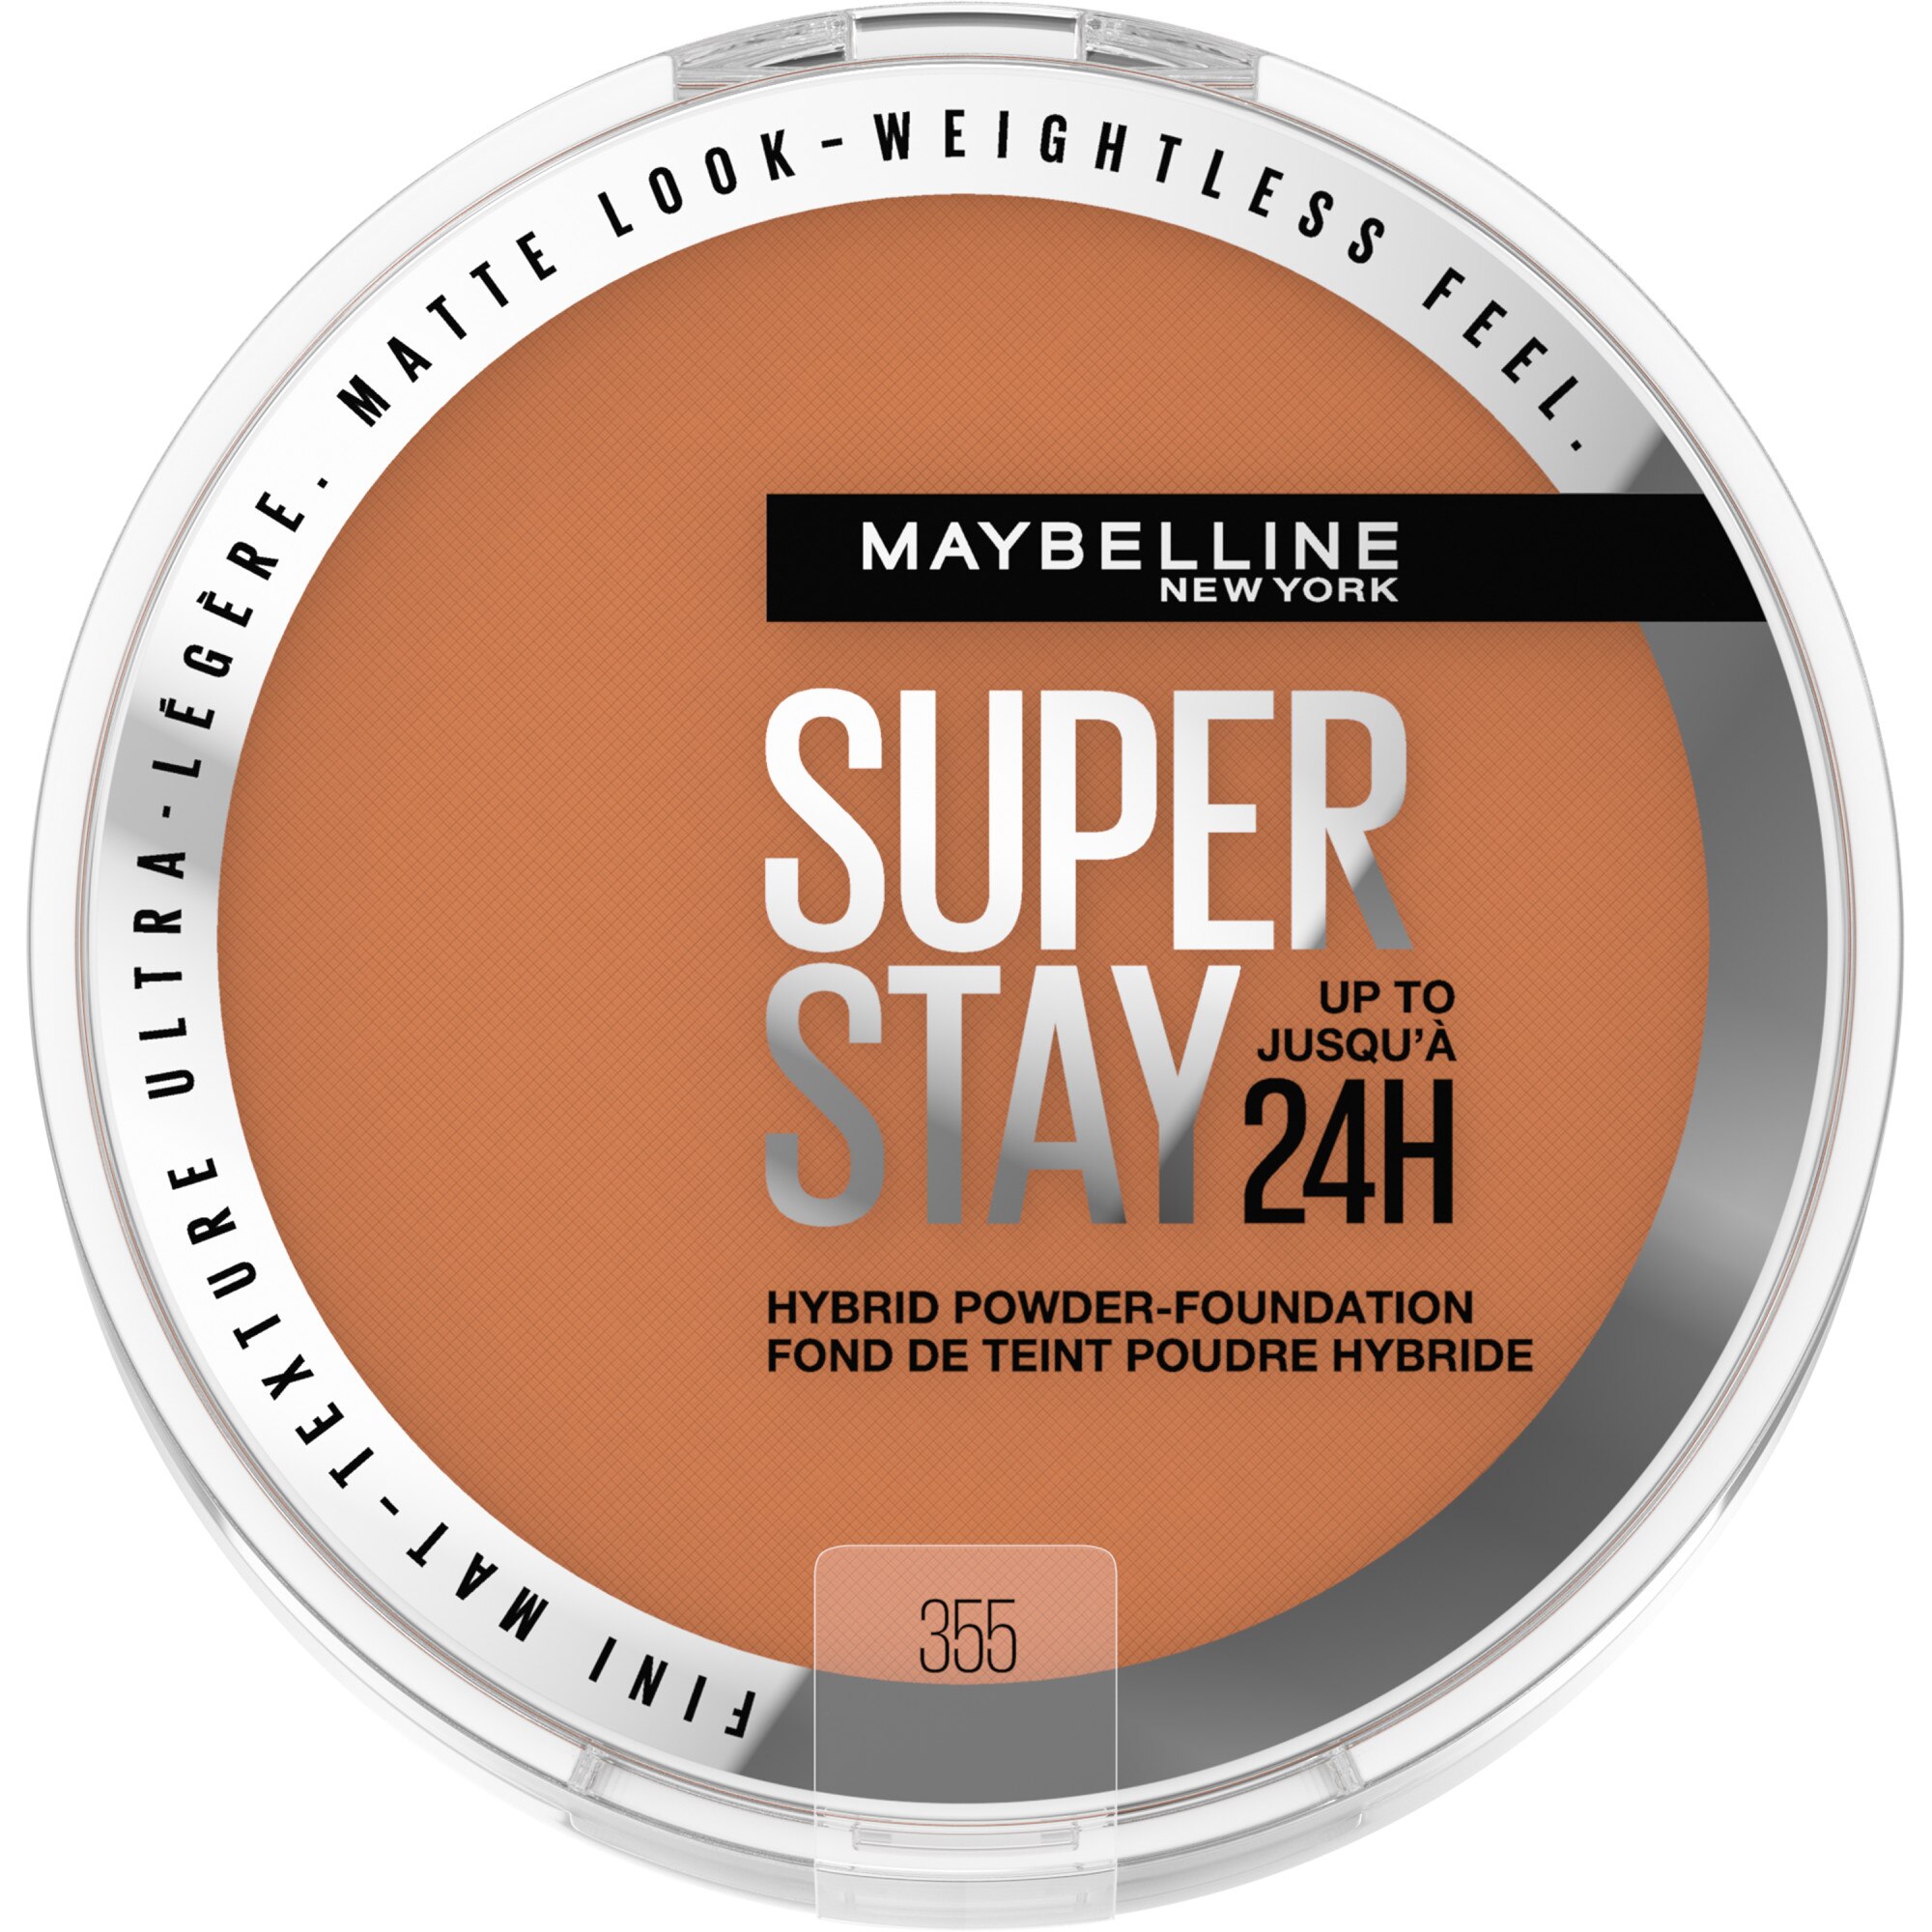 Maybelline New York Super Stay Up To 24HR Hybrid Powder-Foundation, 355, 0.21 Oz , CVS